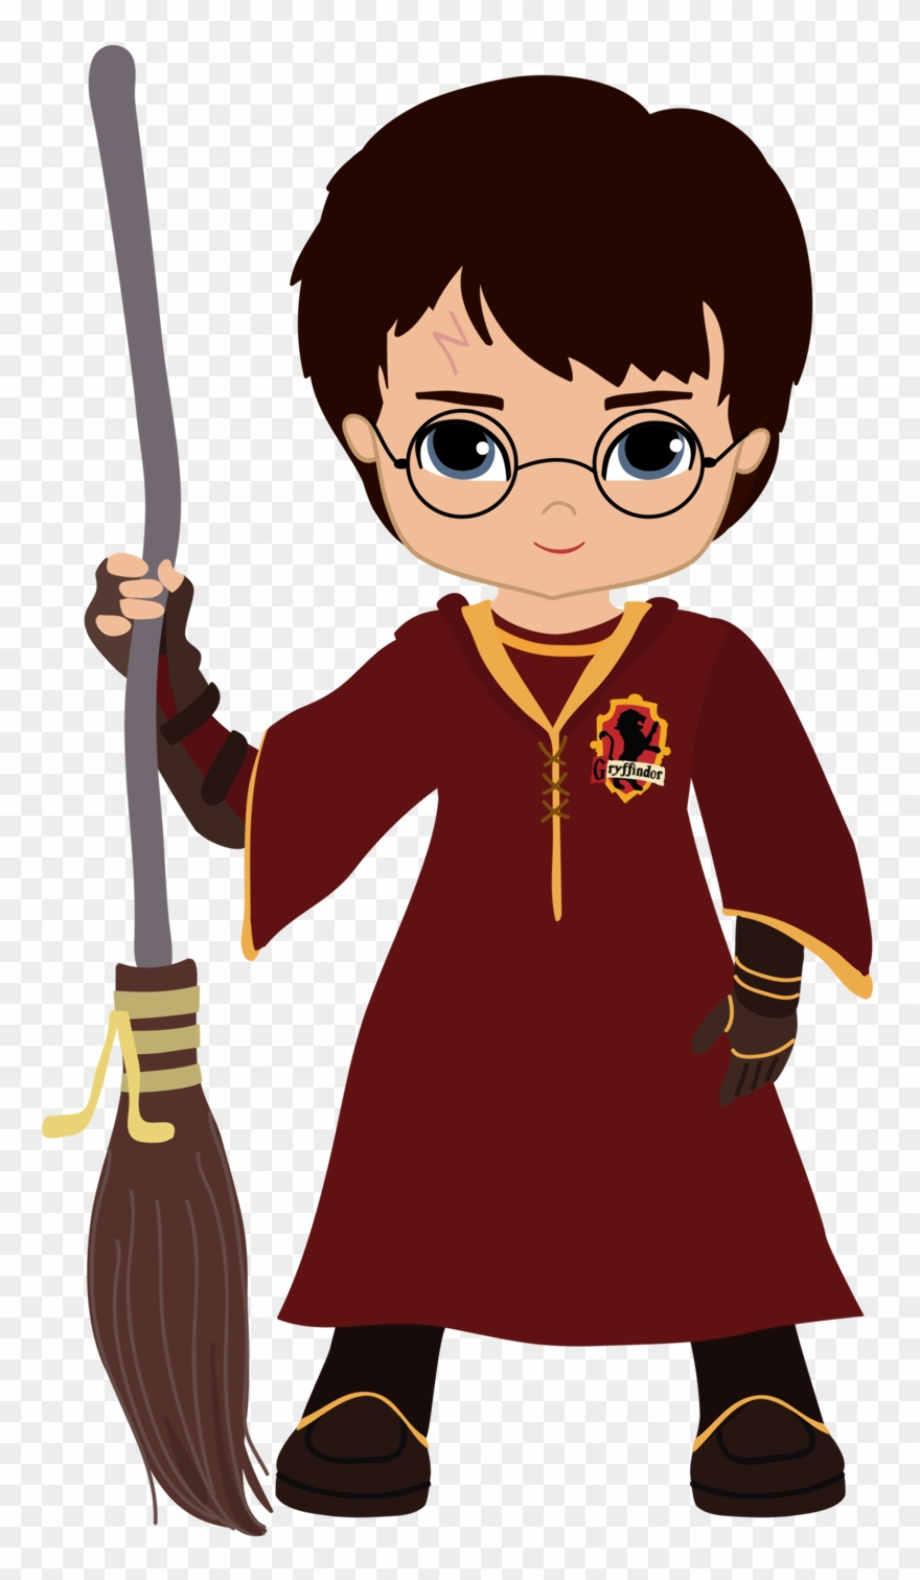 Harry Potter SVG Free